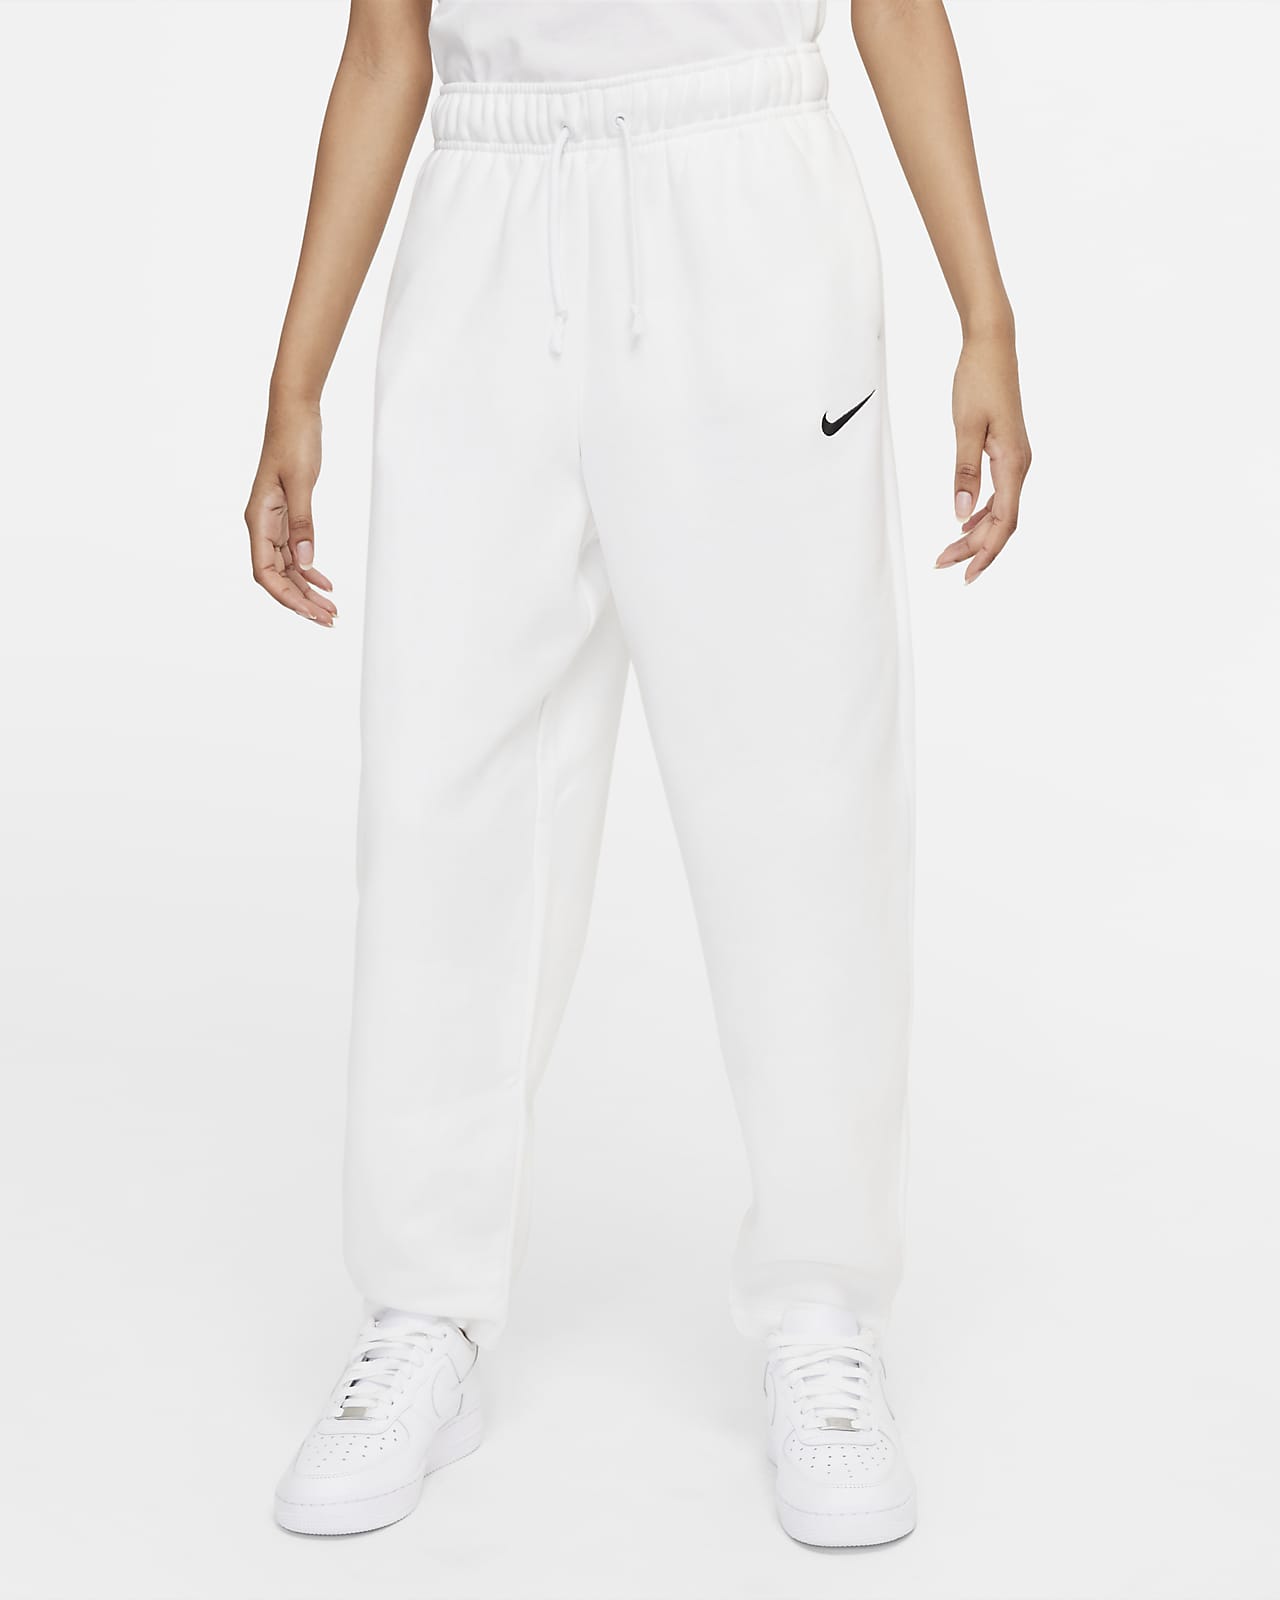 Γυναικείο φλις παντελόνι με στρογγυλεμένη γραμμή Nike Sportswear Collection Essentials